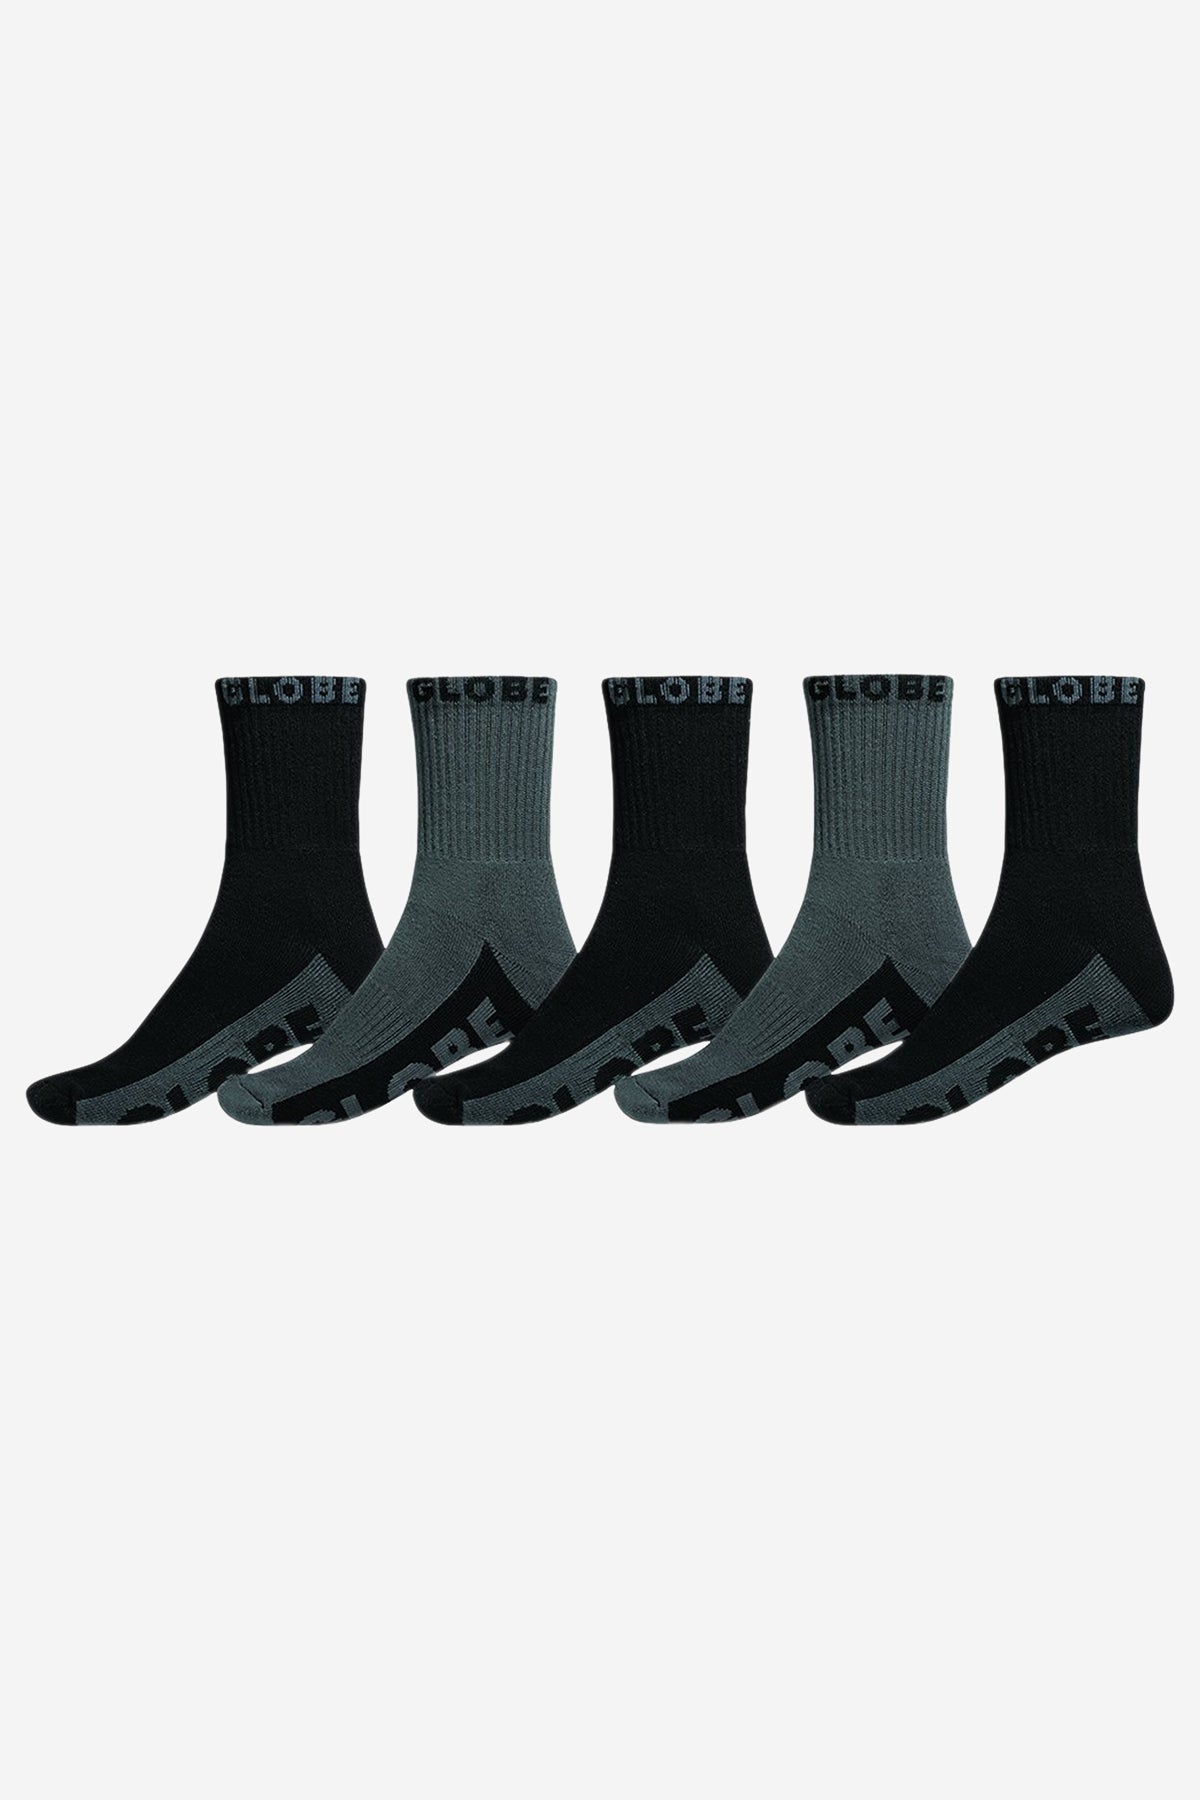 chaussettes noires grises 5 packs